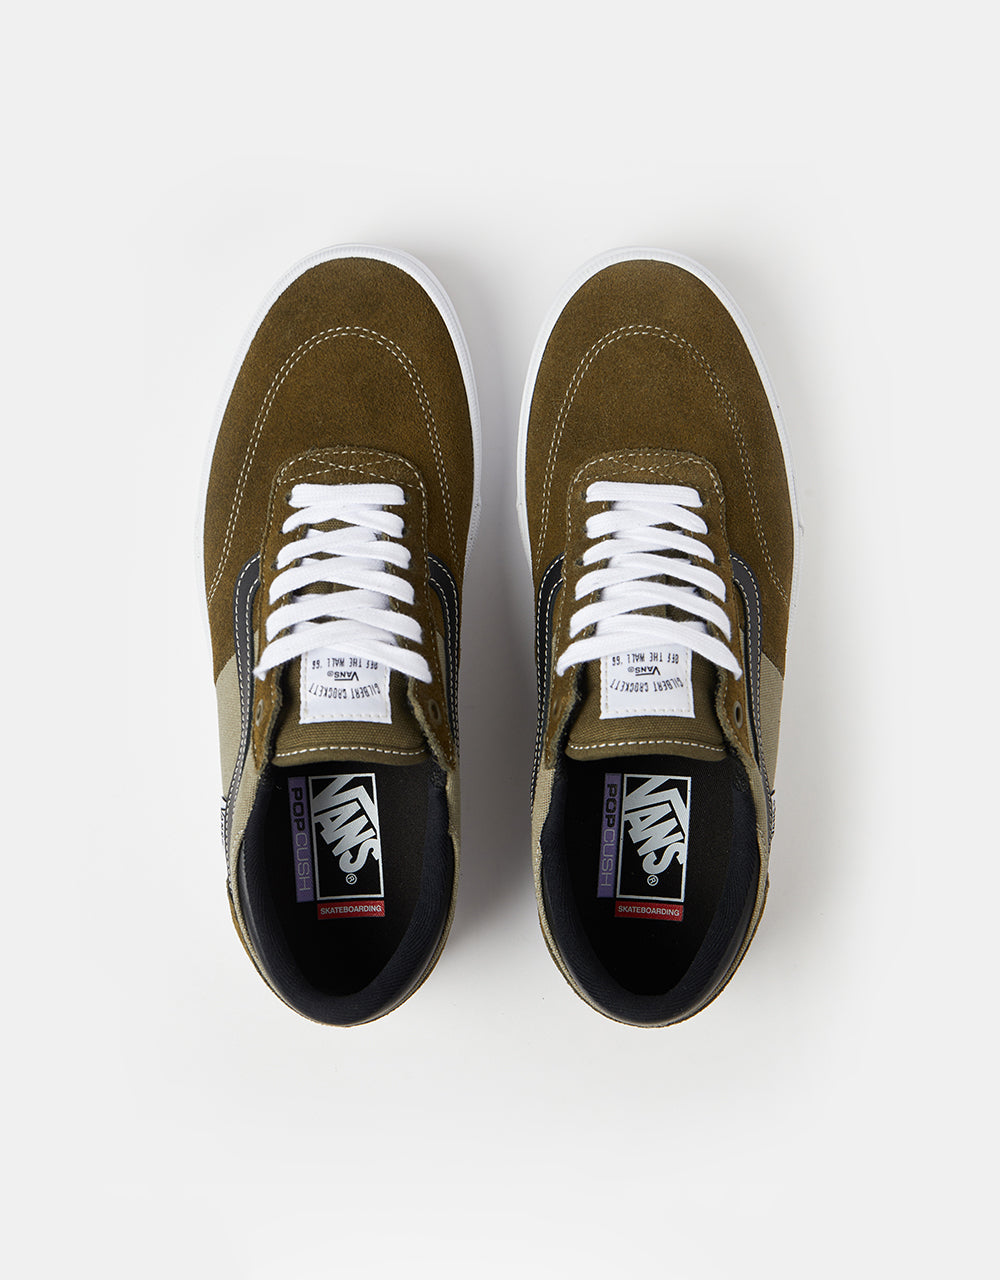 Vans Gilbert Crockett Skate Shoes - Dark Olive